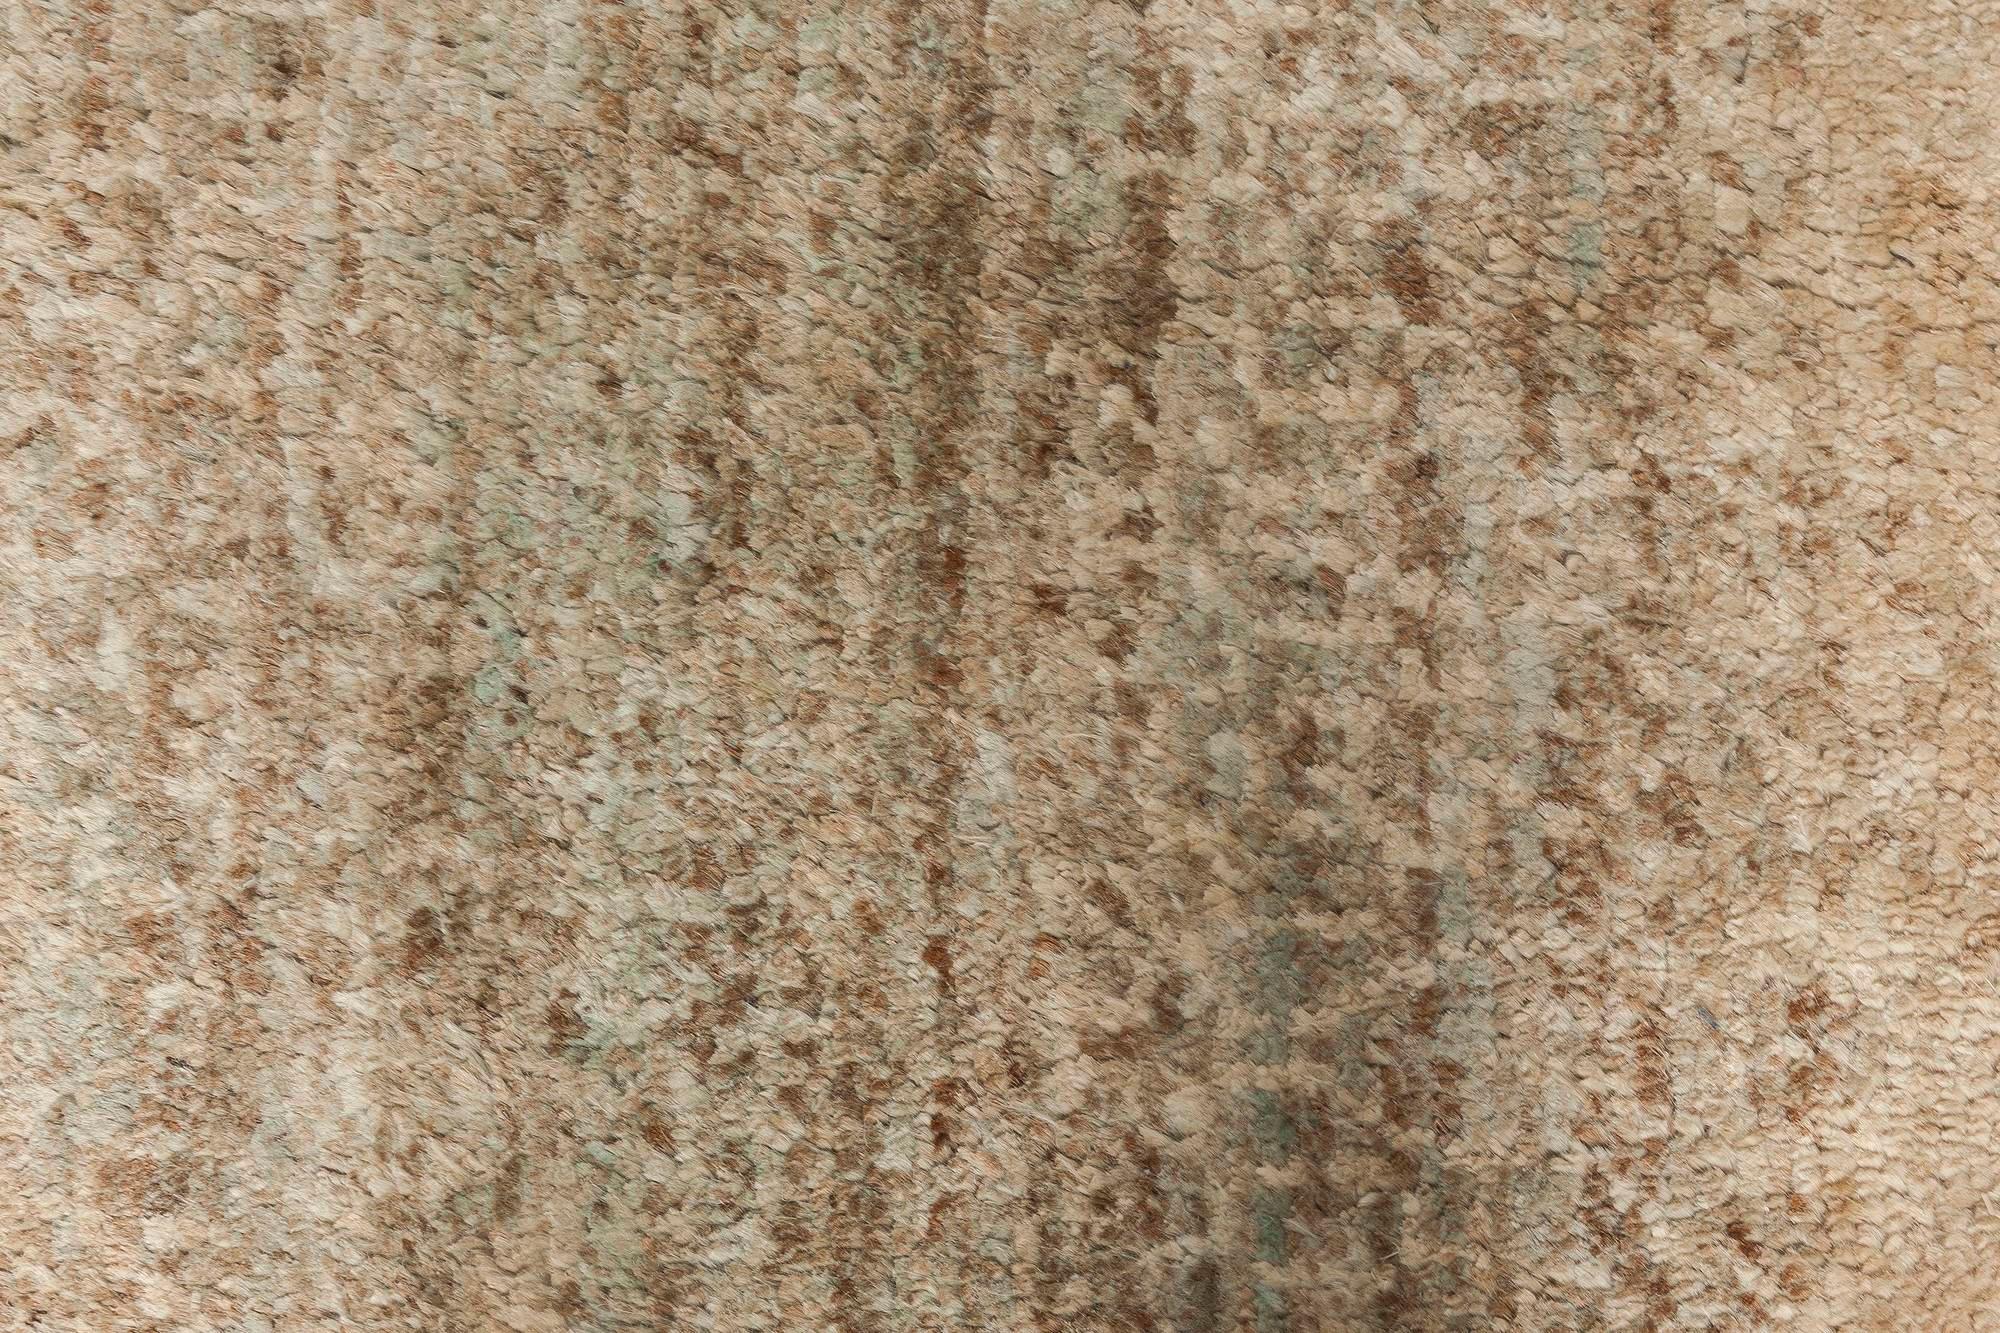 Tapis de course moderne en laine abstraite beige et verte, fait à la main par Doris Leslie Blau.
Taille : 5'4